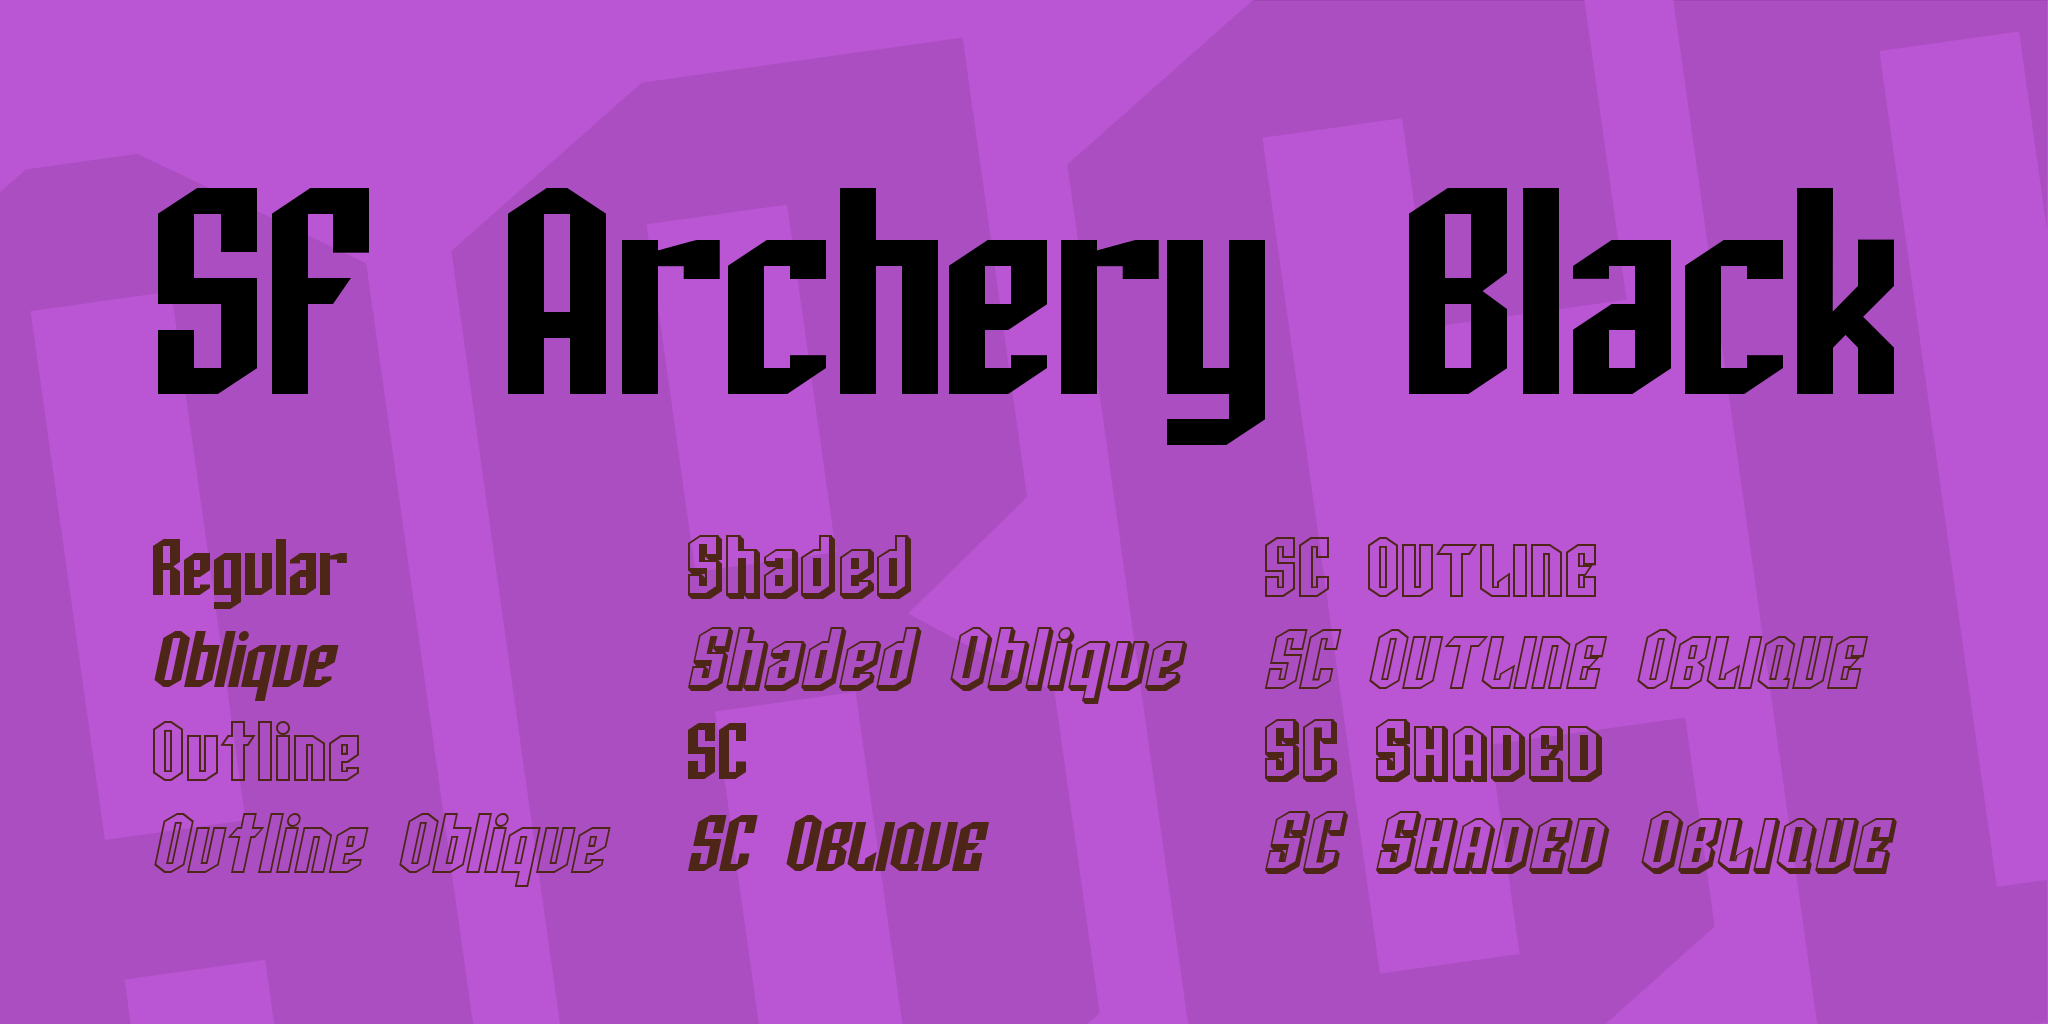 Sf Archery Black